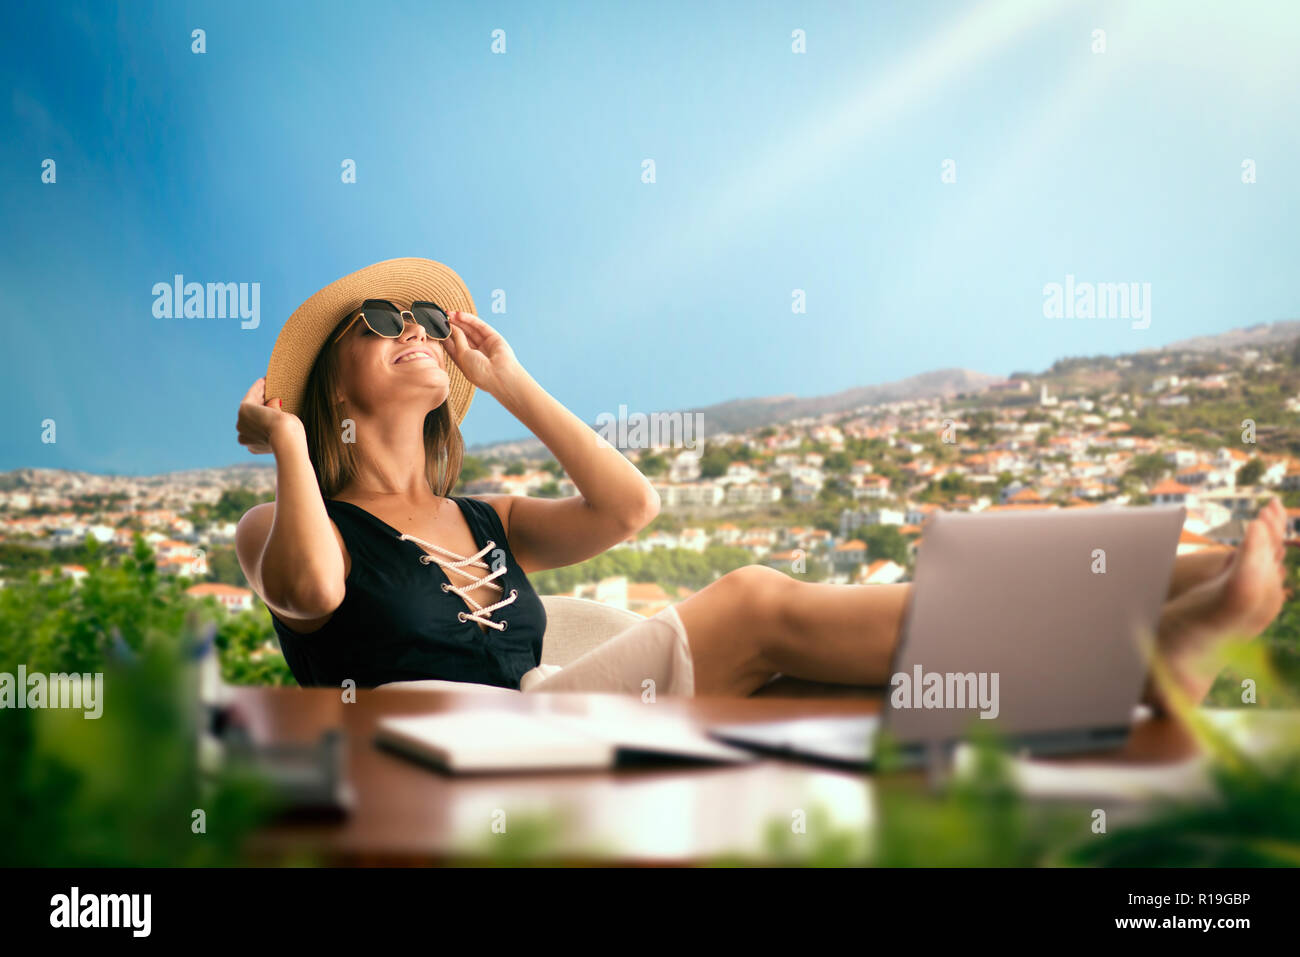 Mujer en un traje de baño en la oficina cuadro pensando en un viaje, paisaje de fondo. Sueña con vacaciones idea, despierto Fotografía de stock -